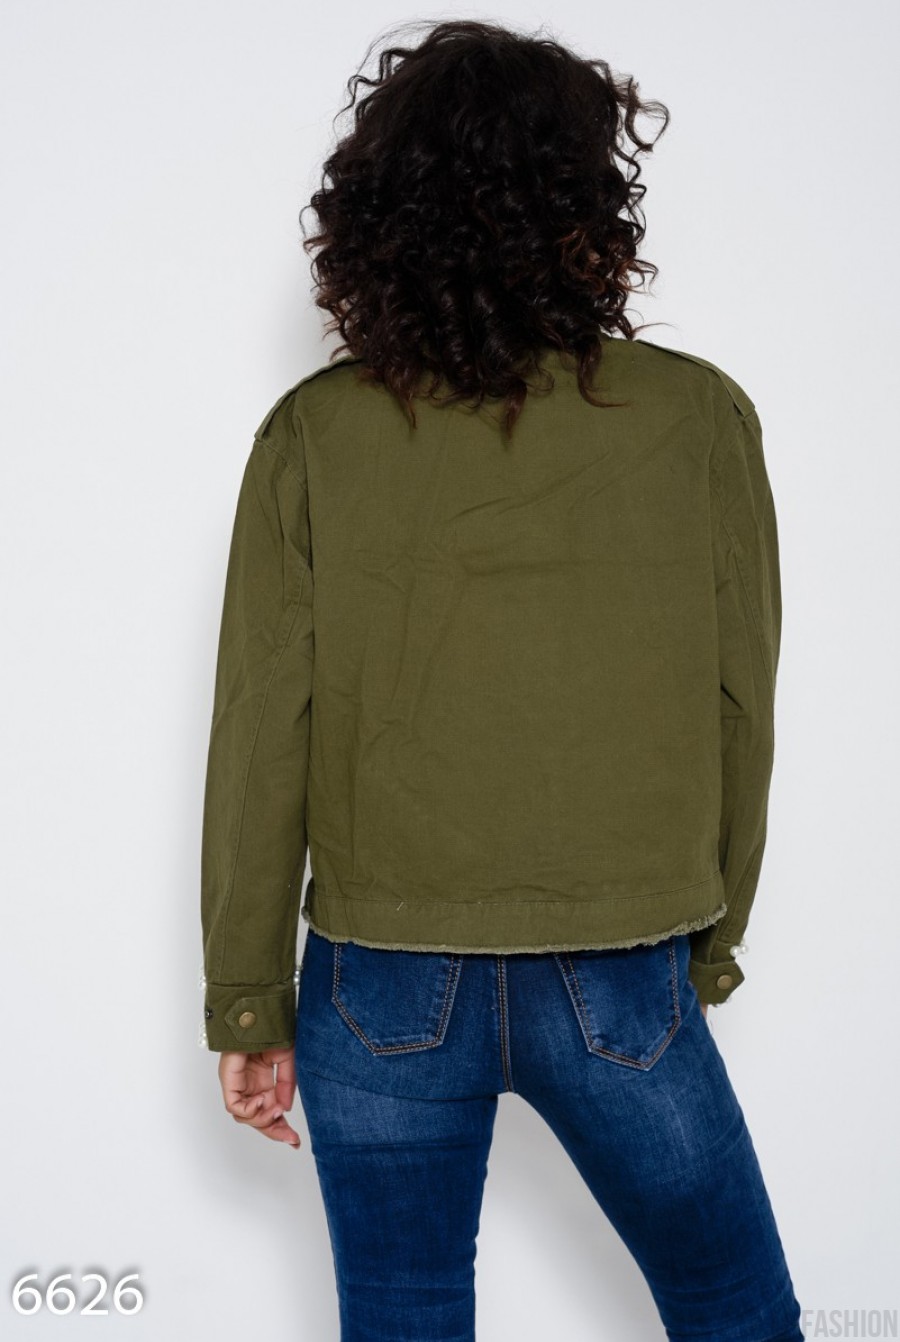 Укороченная джинсовая куртка цвета хаки с бахромой, молнией на воротнике и инкрустацией жемчужинами- Фото 5